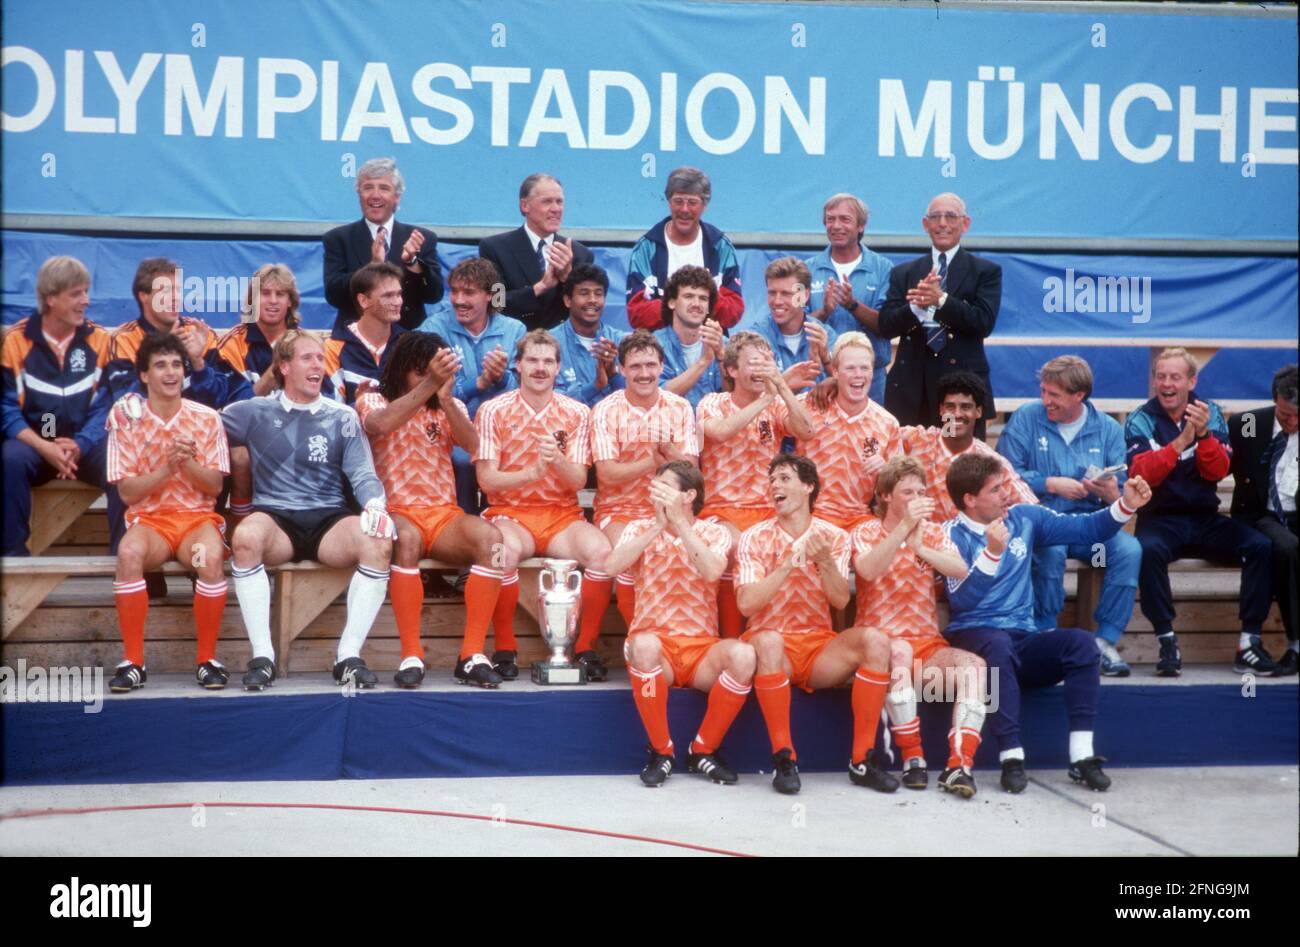 Campeonato Europeo de Fútbol 1988 en Alemania: Final: Holanda - Unión Soviética 2:0/25.06.1988 en Munich. Team Netherlands con CUP. [traducción automática] Foto de stock